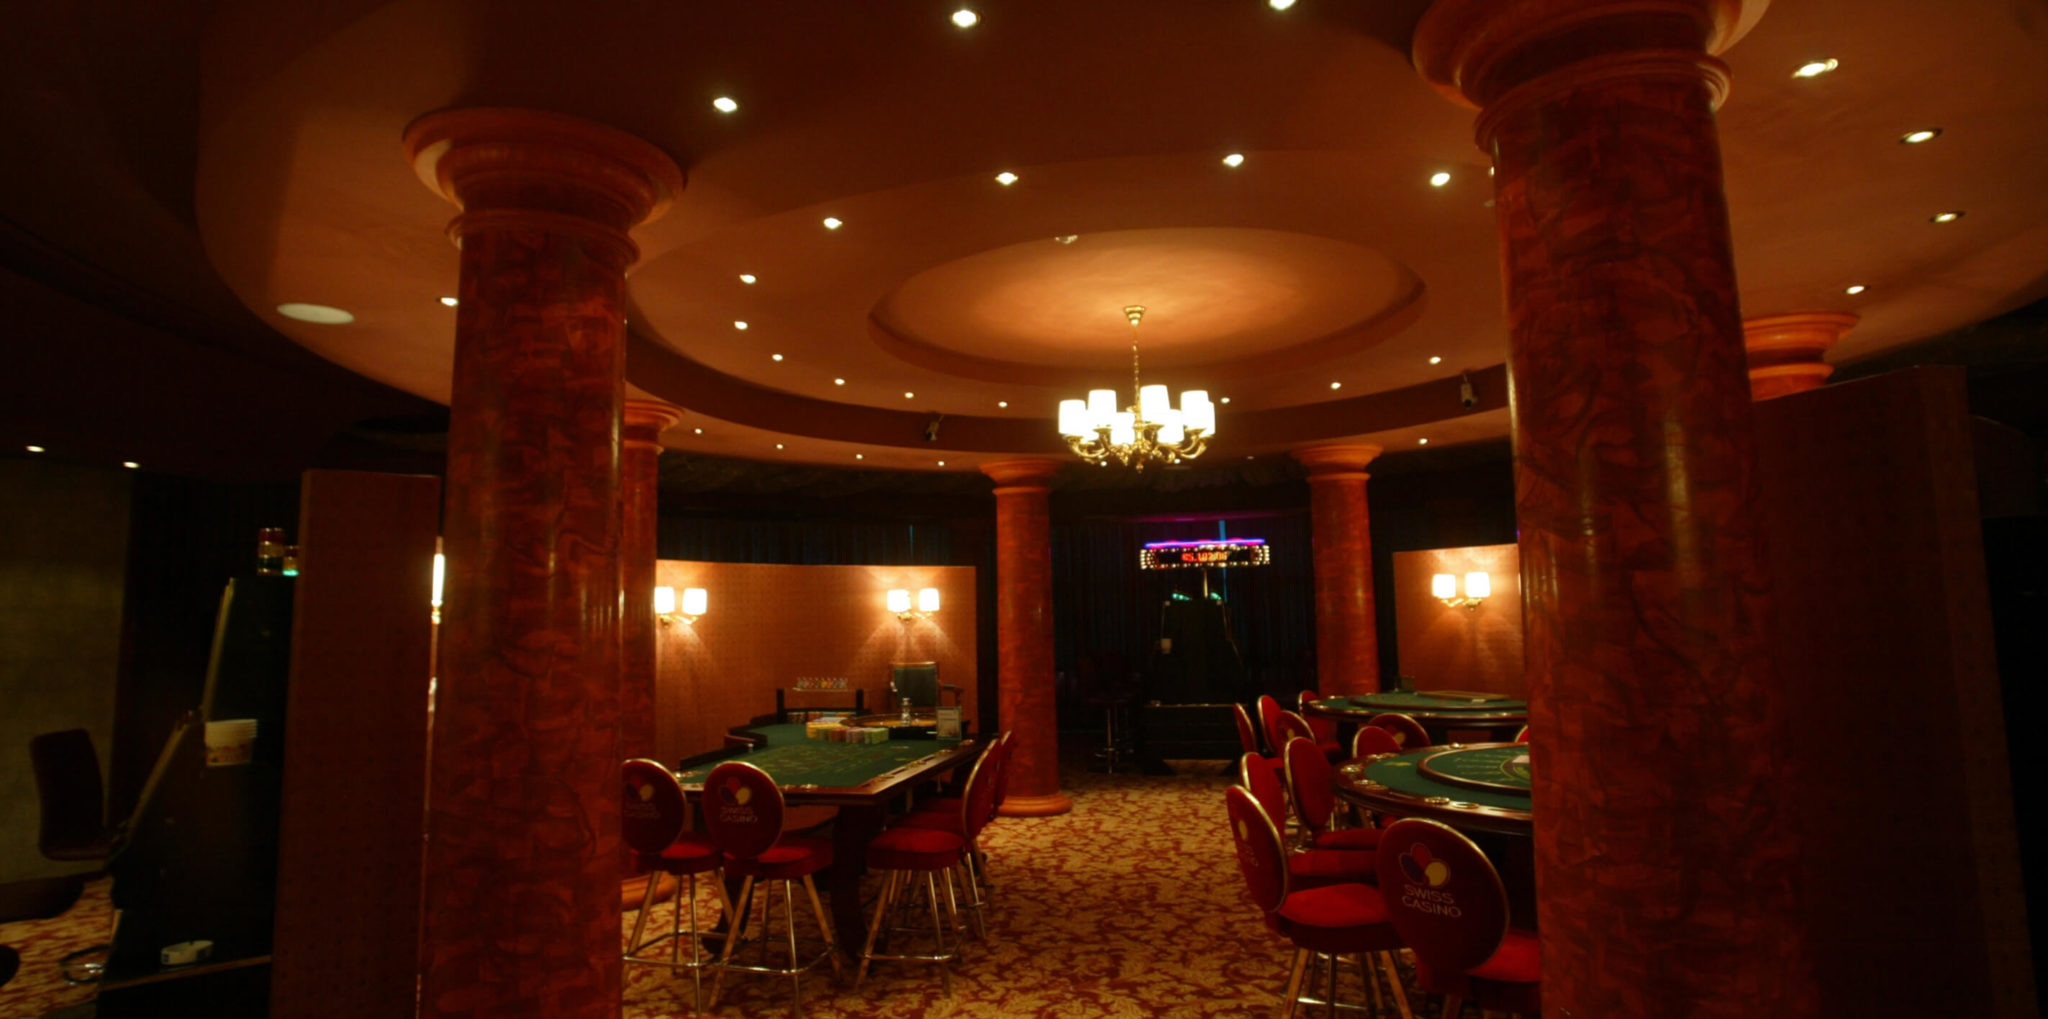 Swiss Casino Red Room